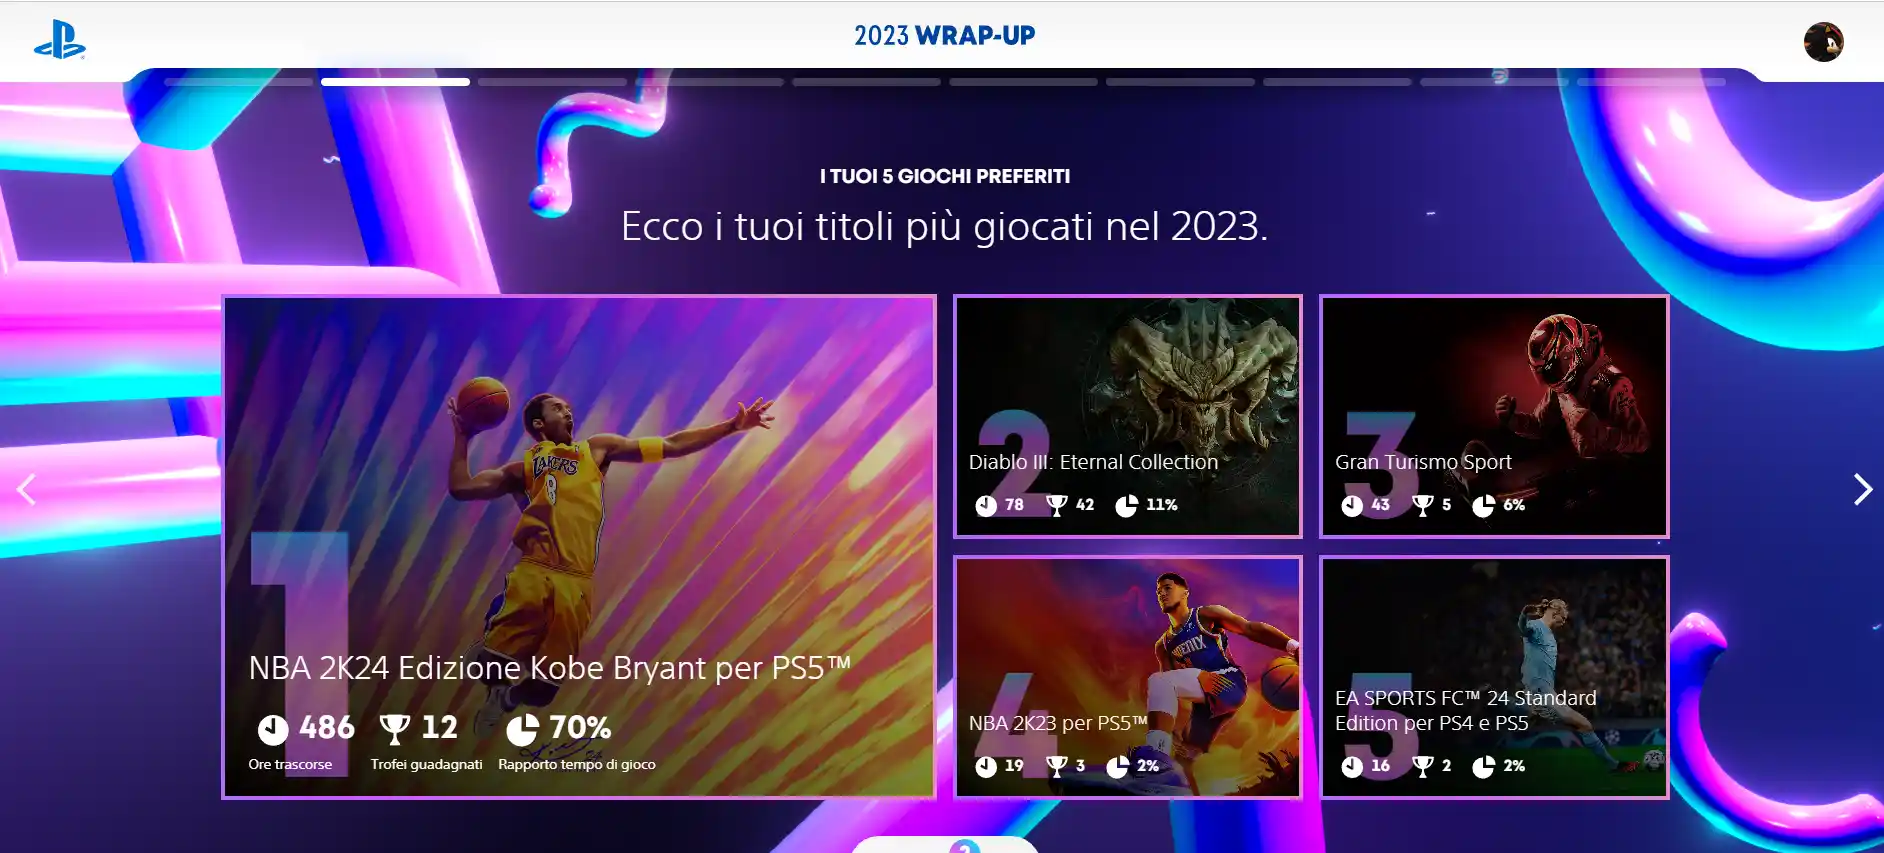 PlayStation Wrap Up 2023 up e Xbox Year in Review 2023 disponibili: come fare il recap del vostro anno gaming